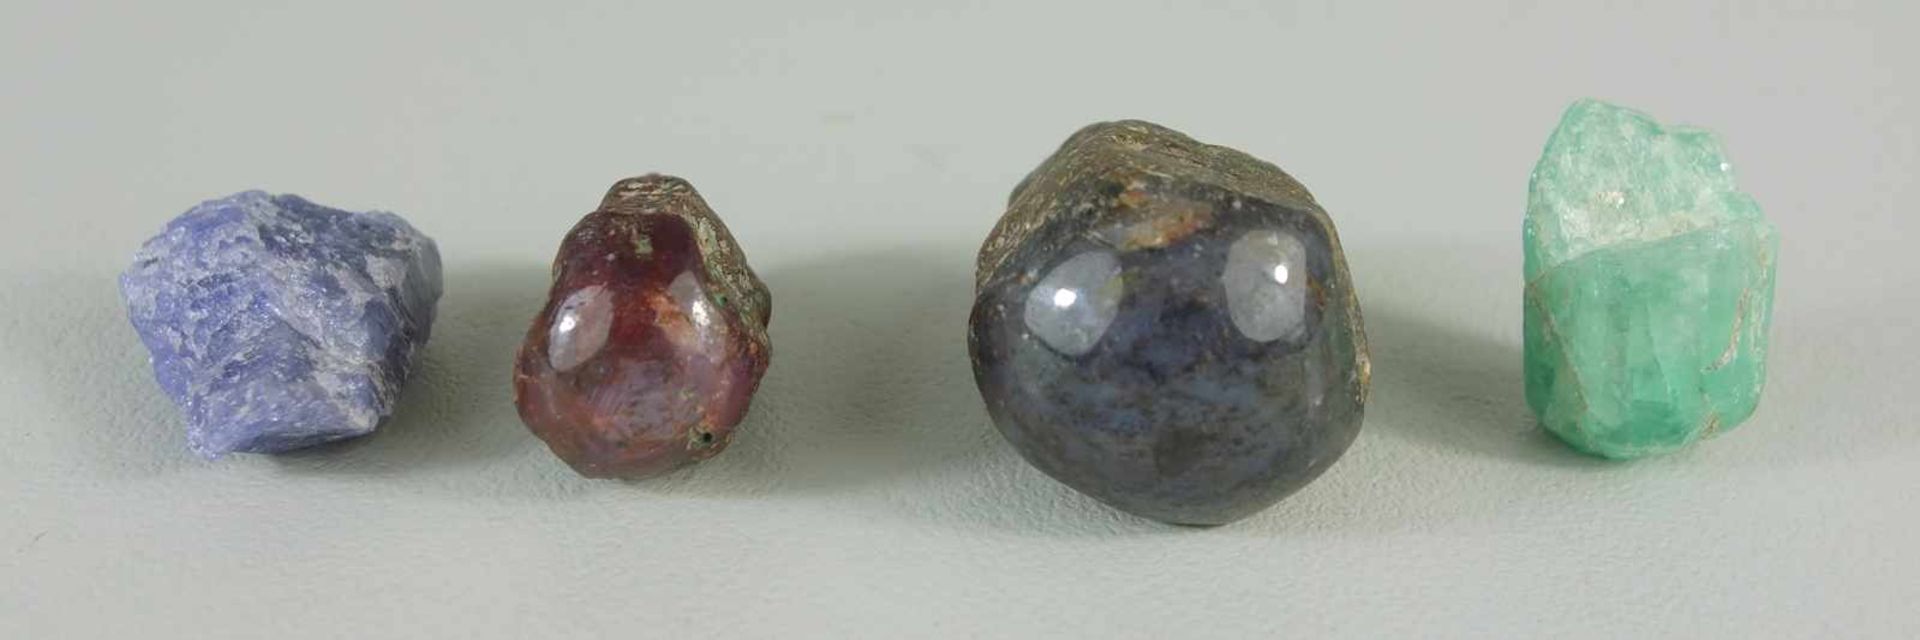 4 Mineralien: Labradorit, HBT 2*4*2,5cm, Gew. 55g, einseitig halbrund poliert; wohl Sternrubin, - Bild 2 aus 2